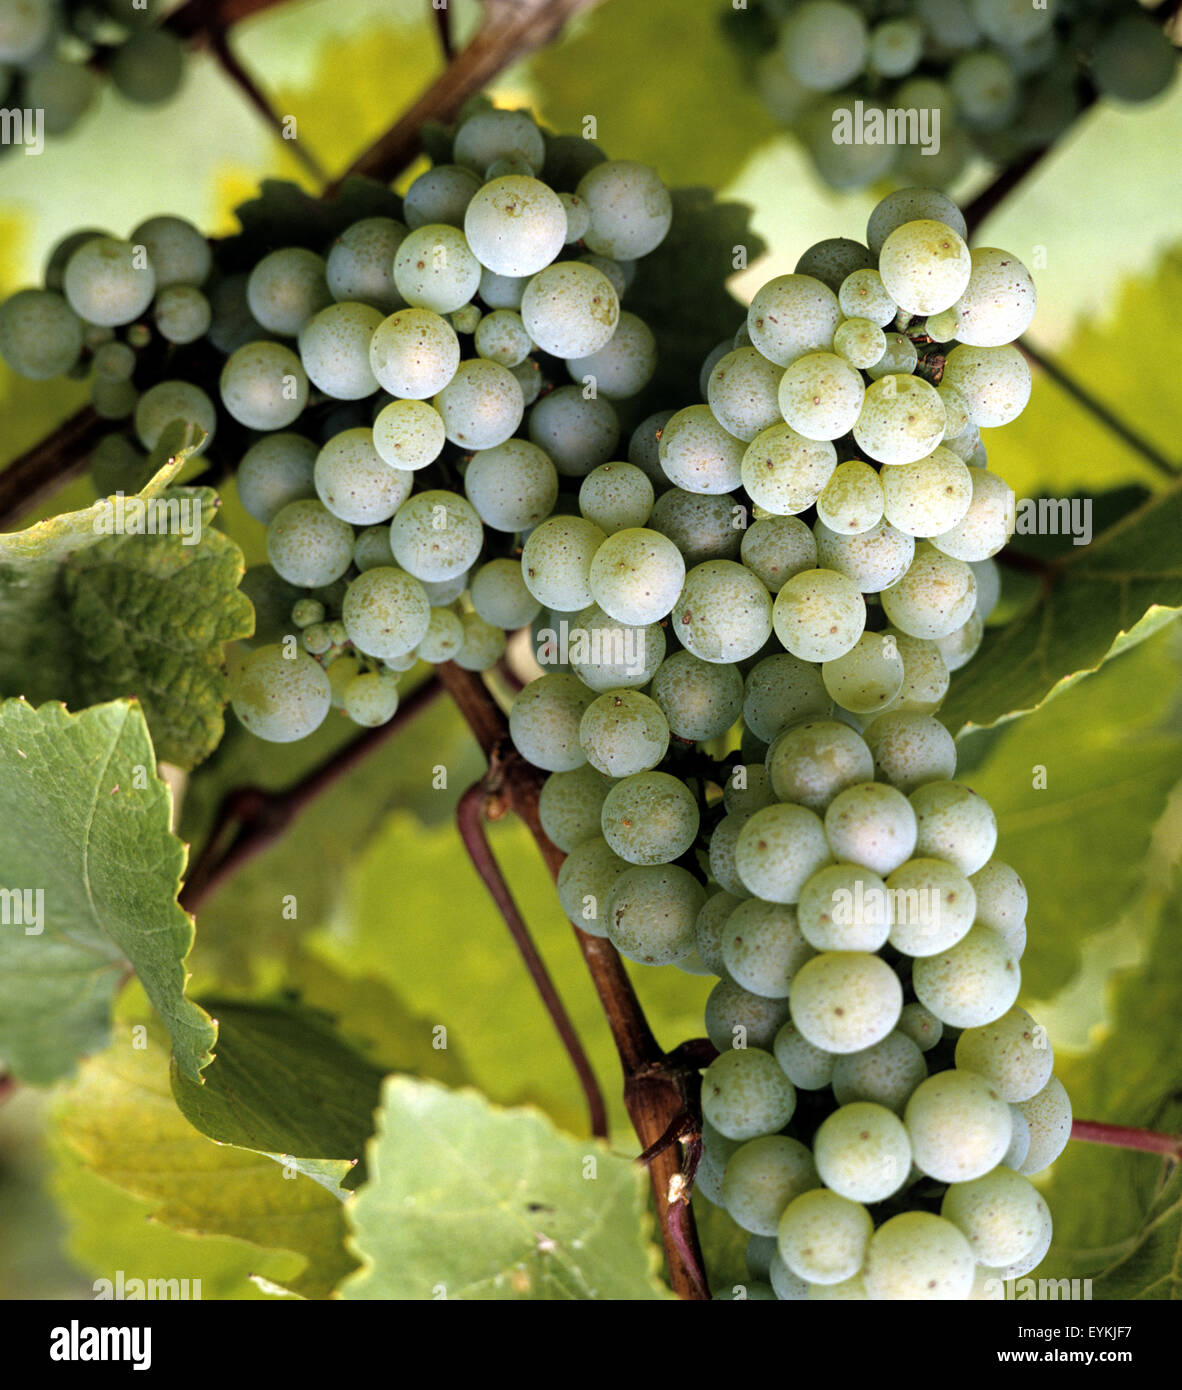 Weintrauben, Weisser Riesling, Wein, Weinpflanzen, Reben, Fruechte, Beeren, Obst,  - Stock Photo